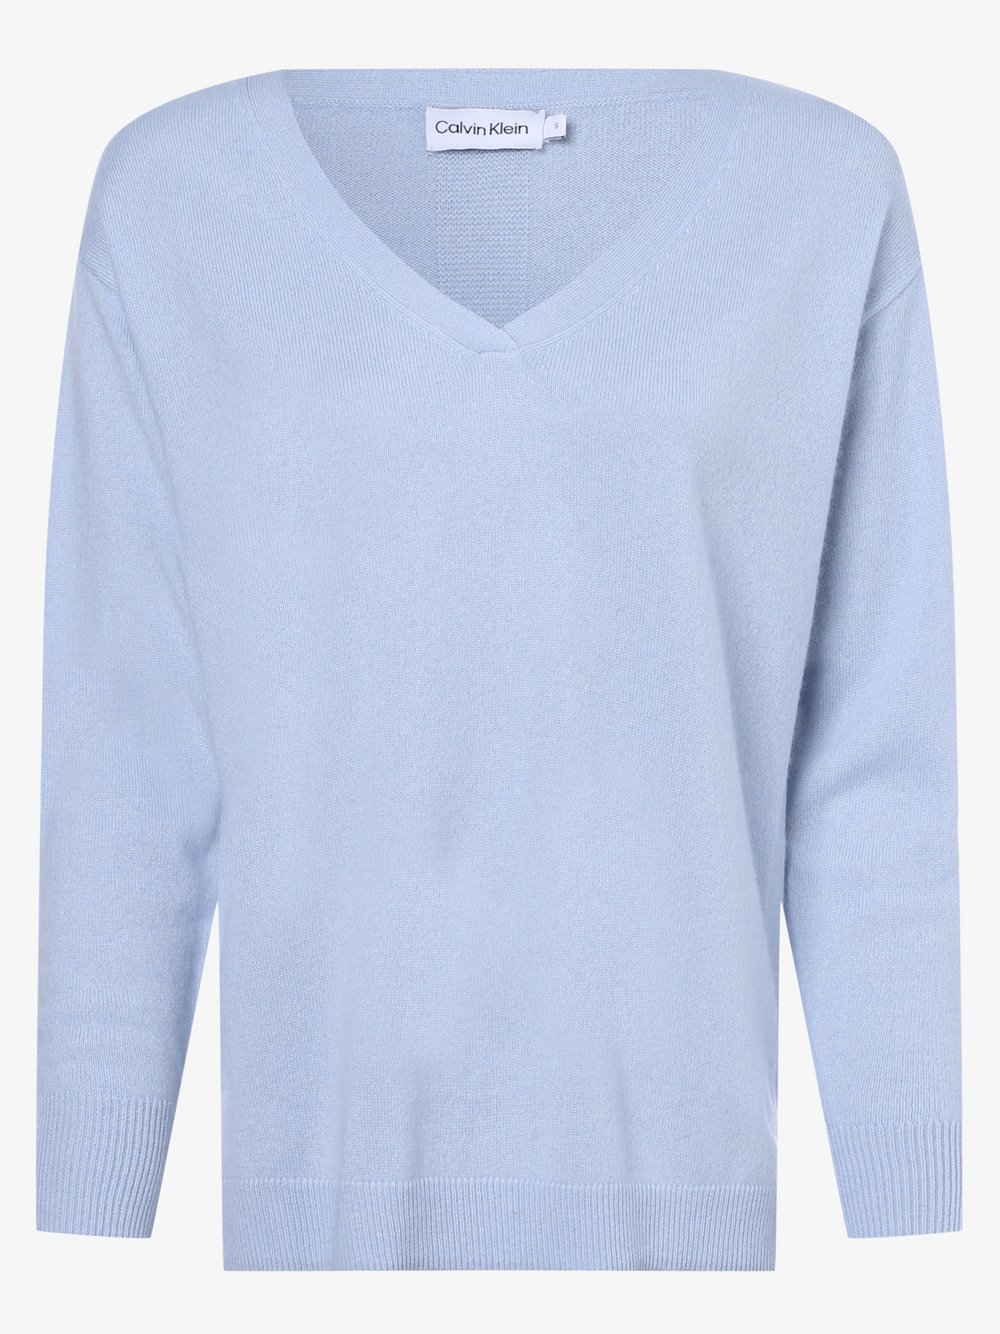 Calvin Klein - Sweter damski z czystego kaszmiru, niebieski